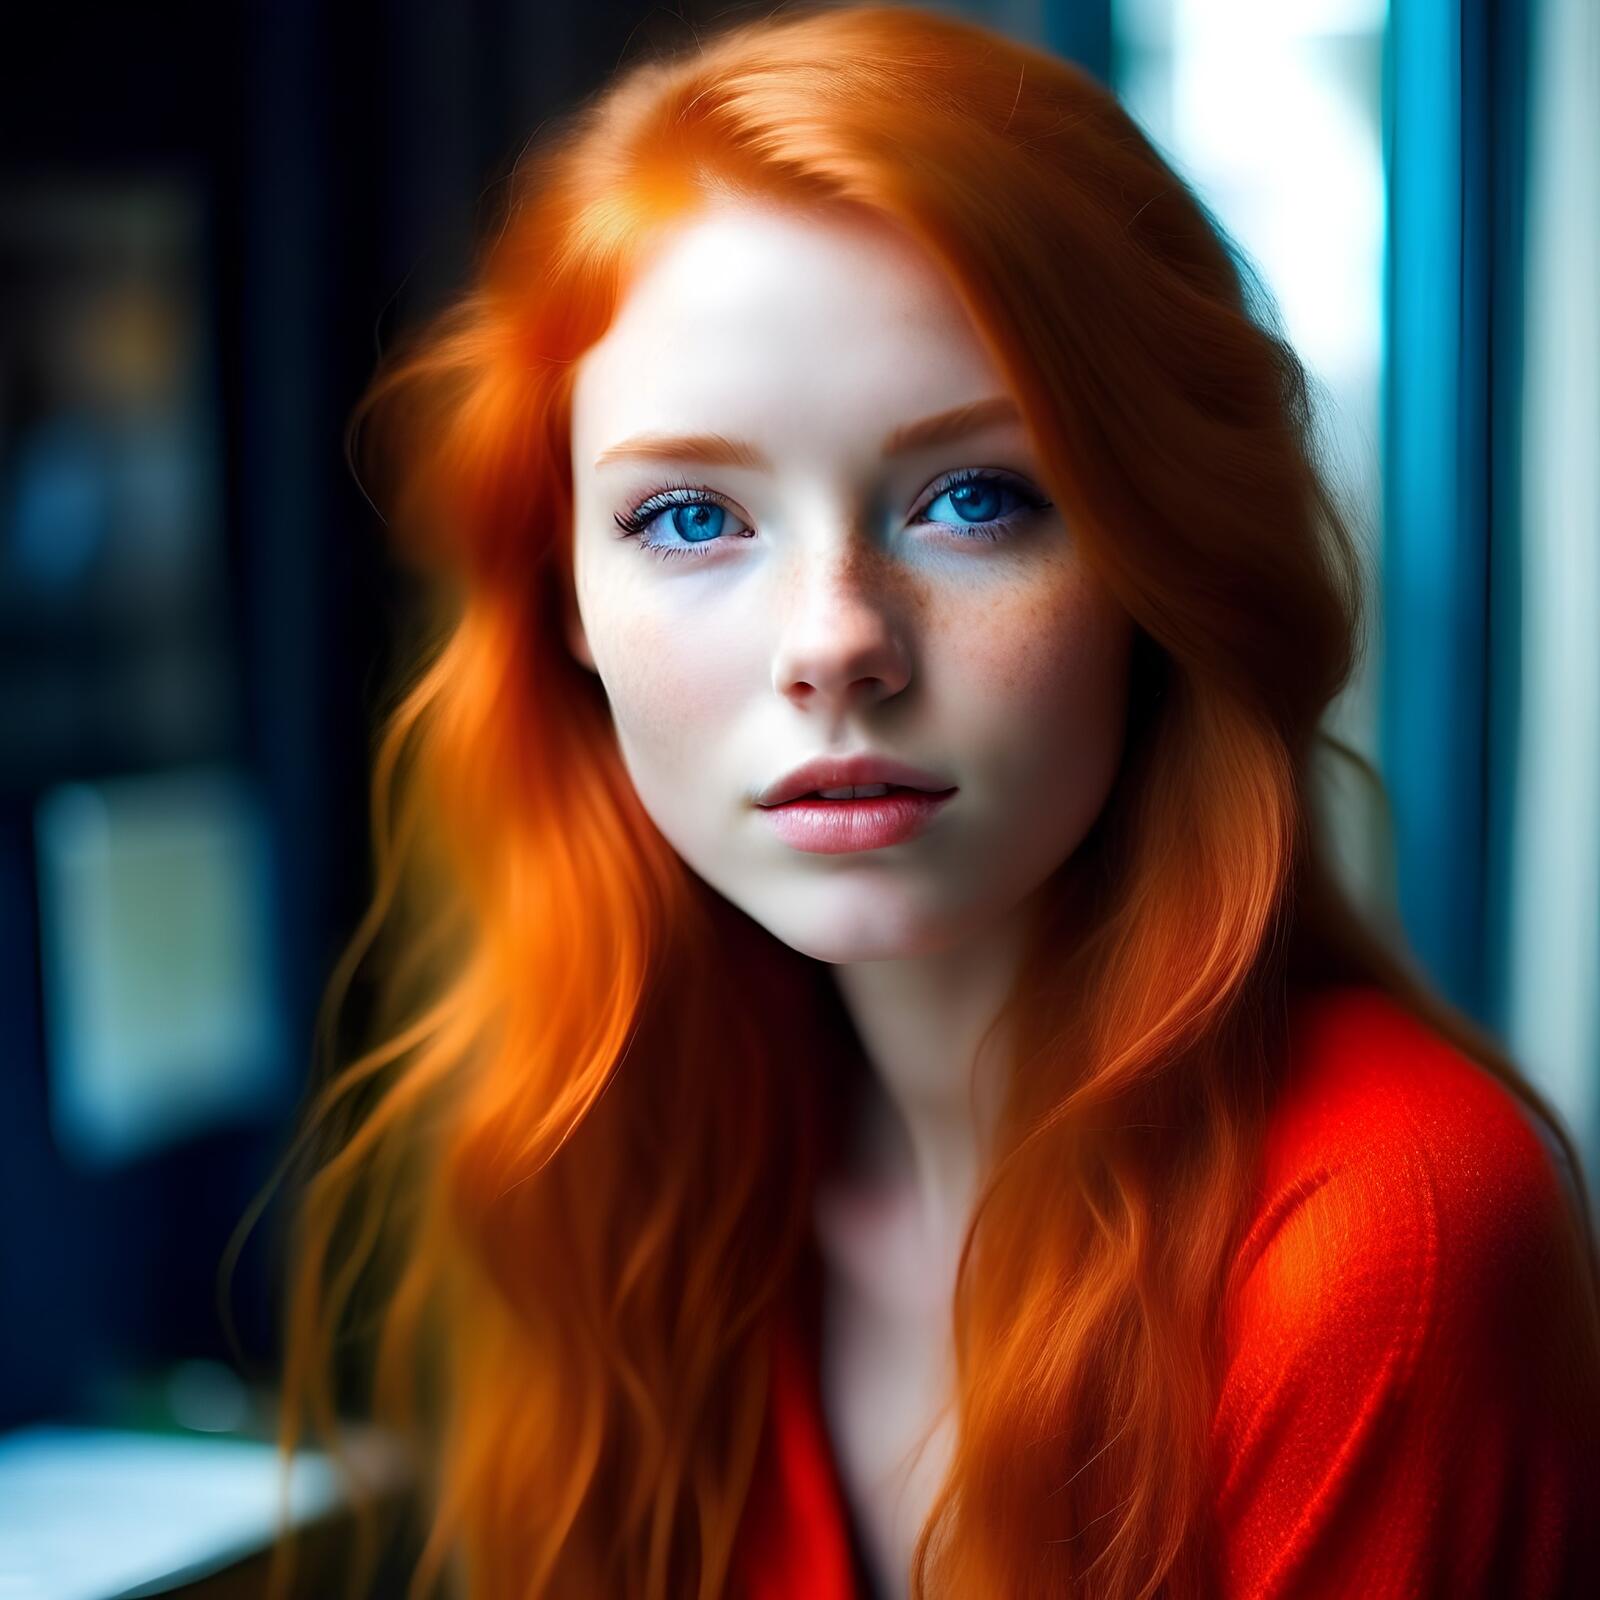 Бесплатное фото Рыжая девушка с голубыми глазами